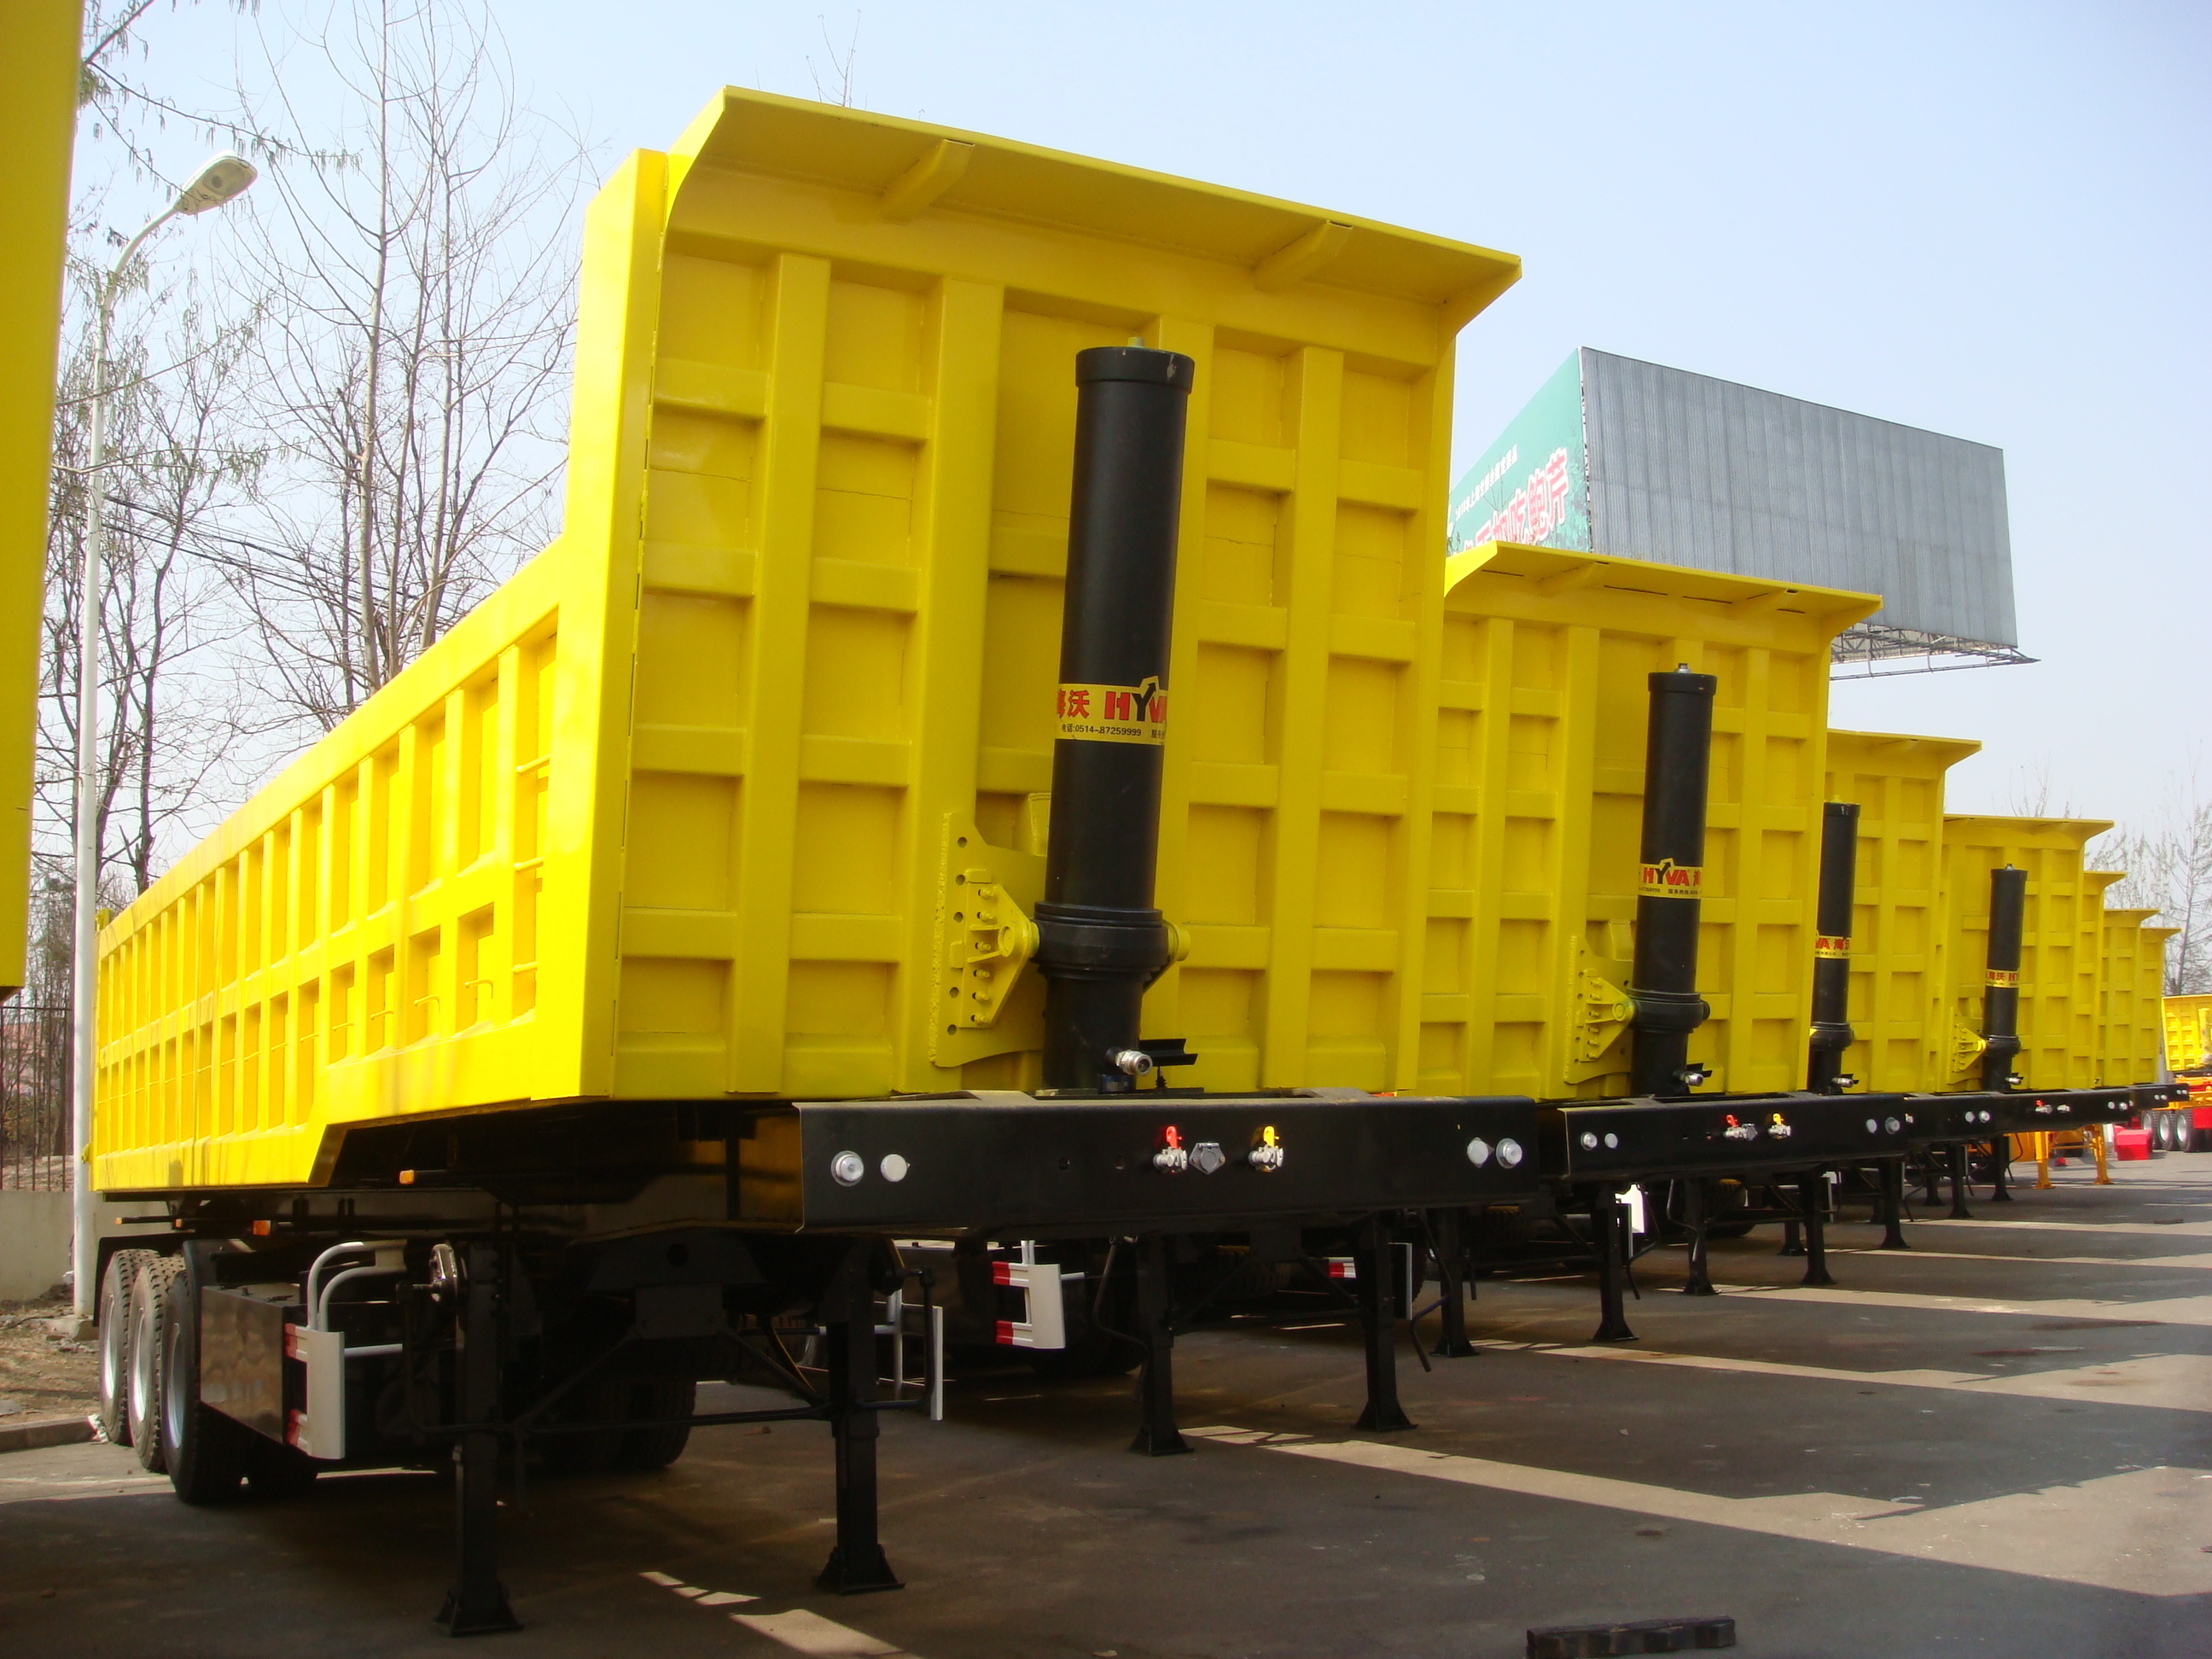 42 cbm Dump Auflieger mit 3 BPW Achsen und hydraulischer Heckaustragung für 80 Tonnen